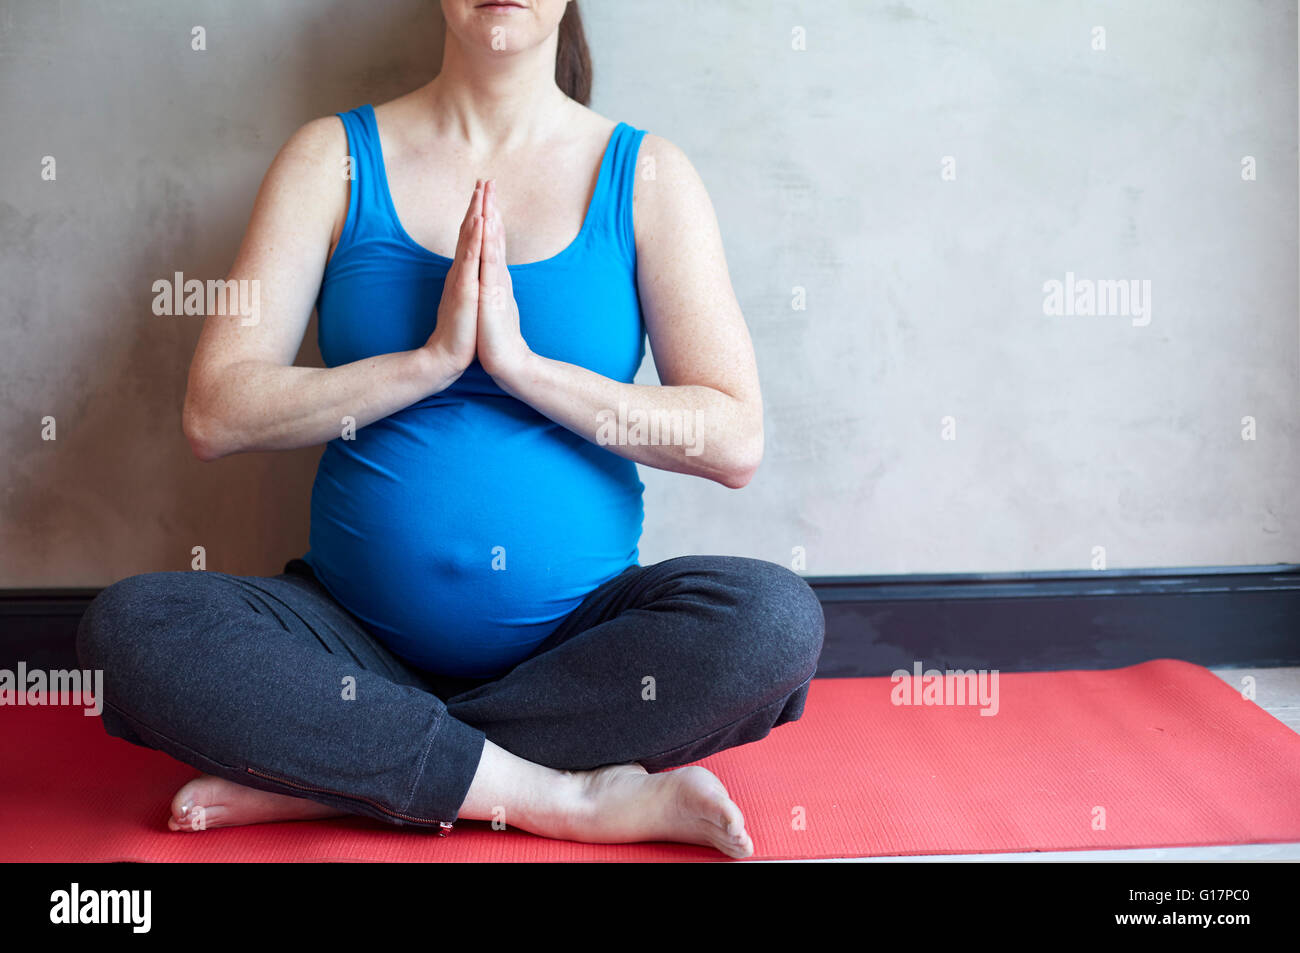 Mujer embarazada sentada piernas cruzadas, las manos juntas en pose de yoga Foto de stock